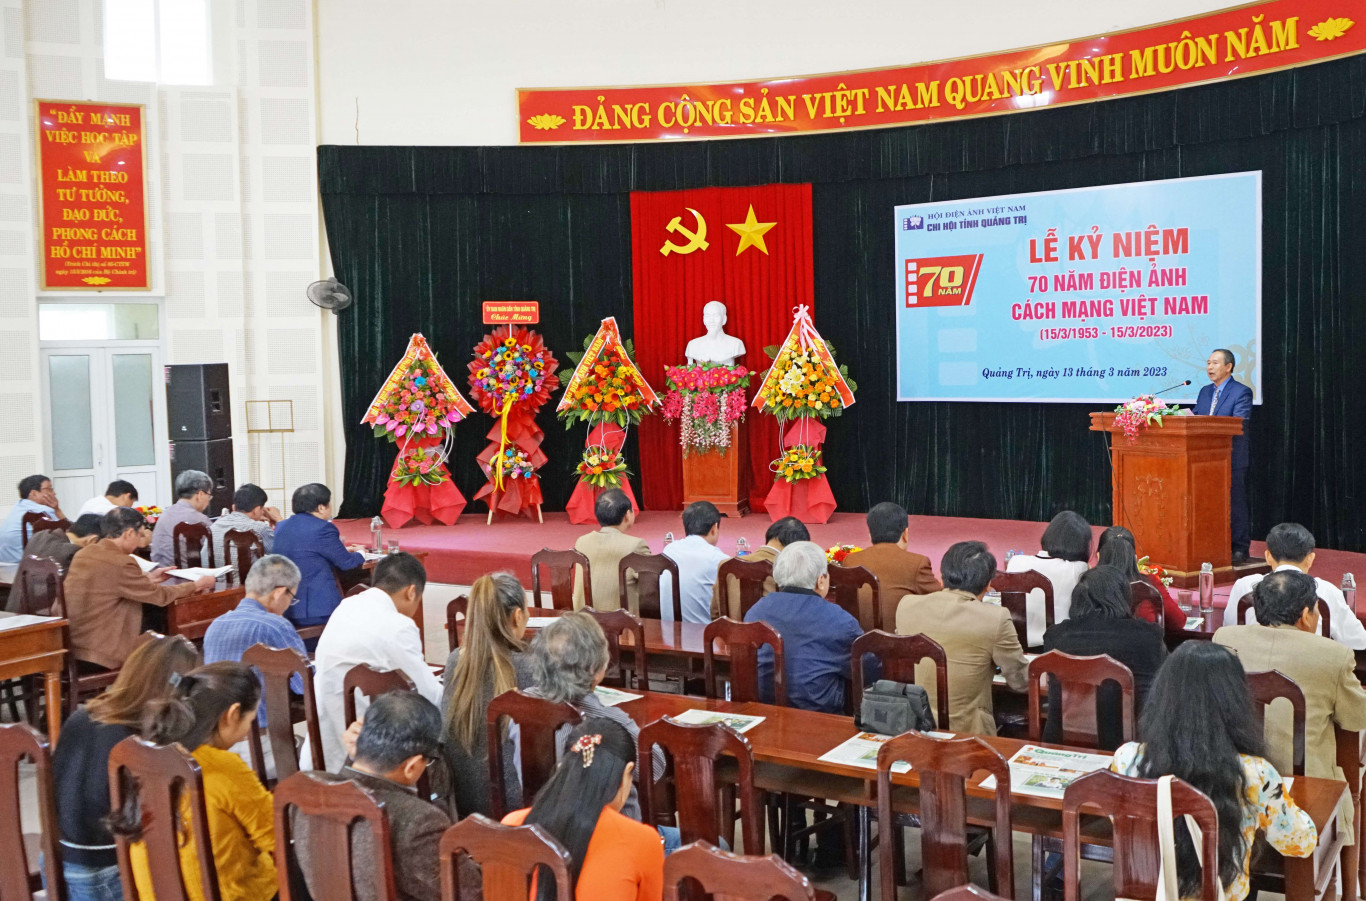 Chi Hội trưởng Chi hội Điện ảnh Việt Nam tỉnh Quảng Trị Hồ Thanh Thoan phát biểu tại buổi lễ